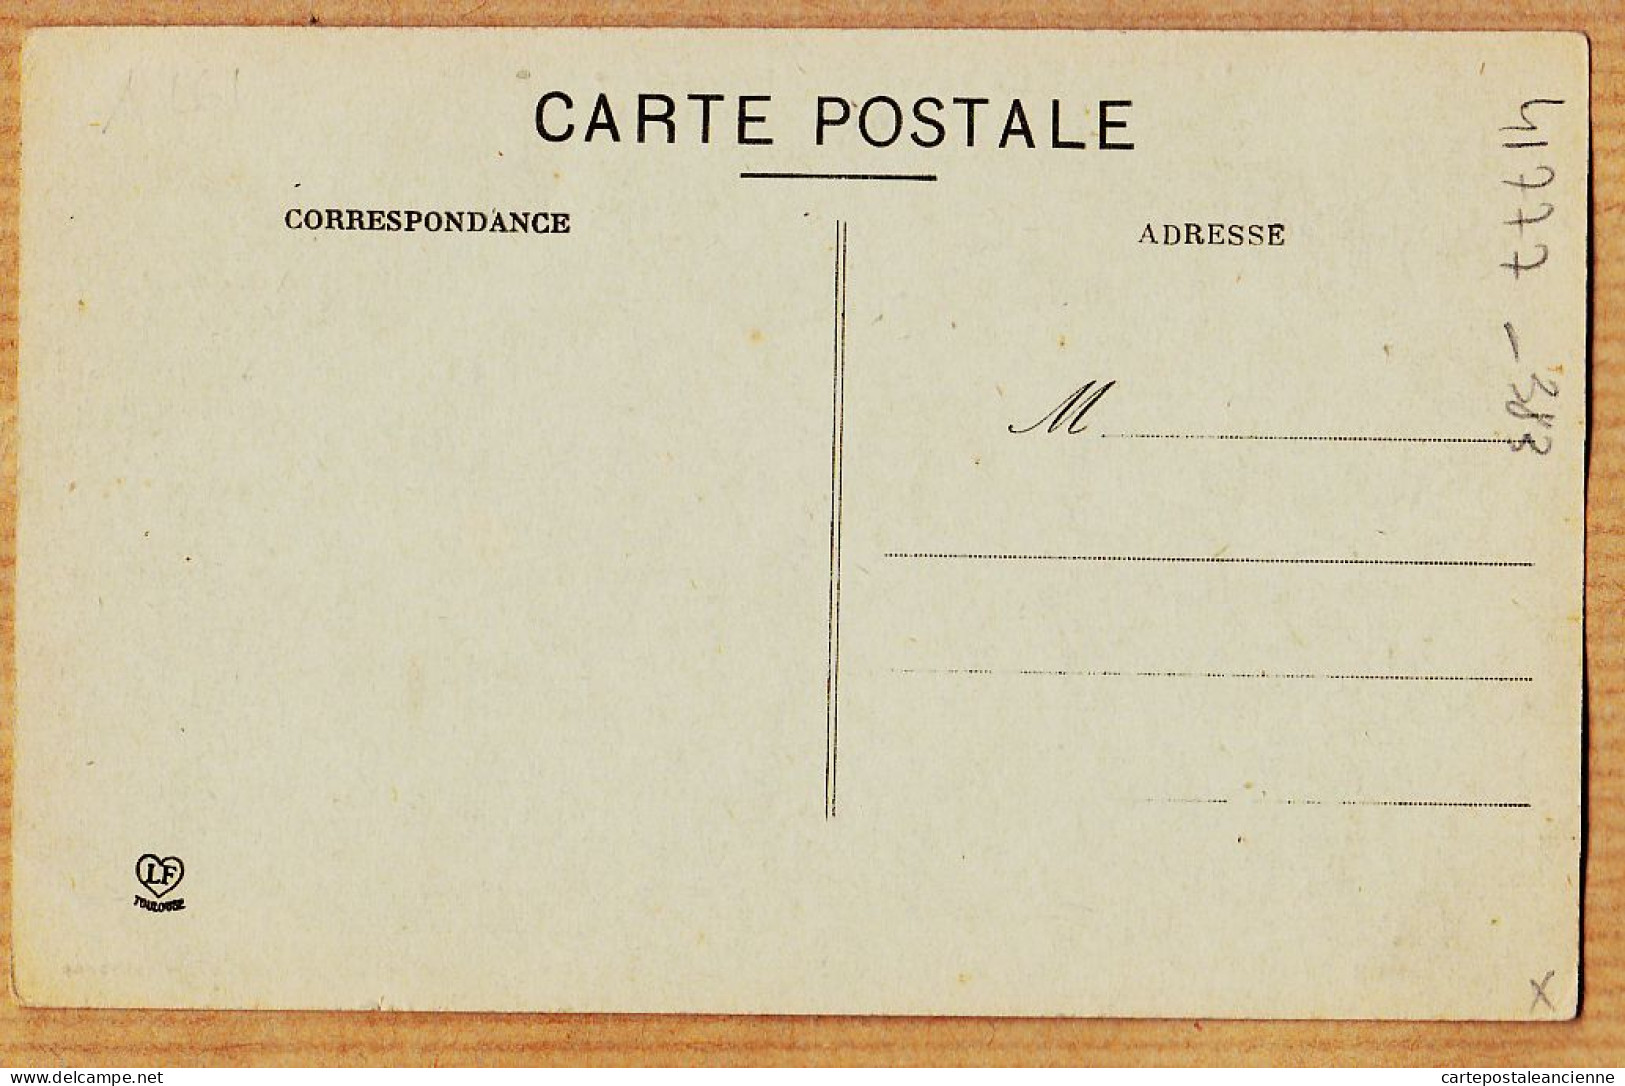 04422 / ⭐ ◉ Peu Commun L'ISLE-sur-TARN Place Et Ancienne Fontaine LIsle 1910s-LAMBERT LABOUCHE  - Lisle Sur Tarn